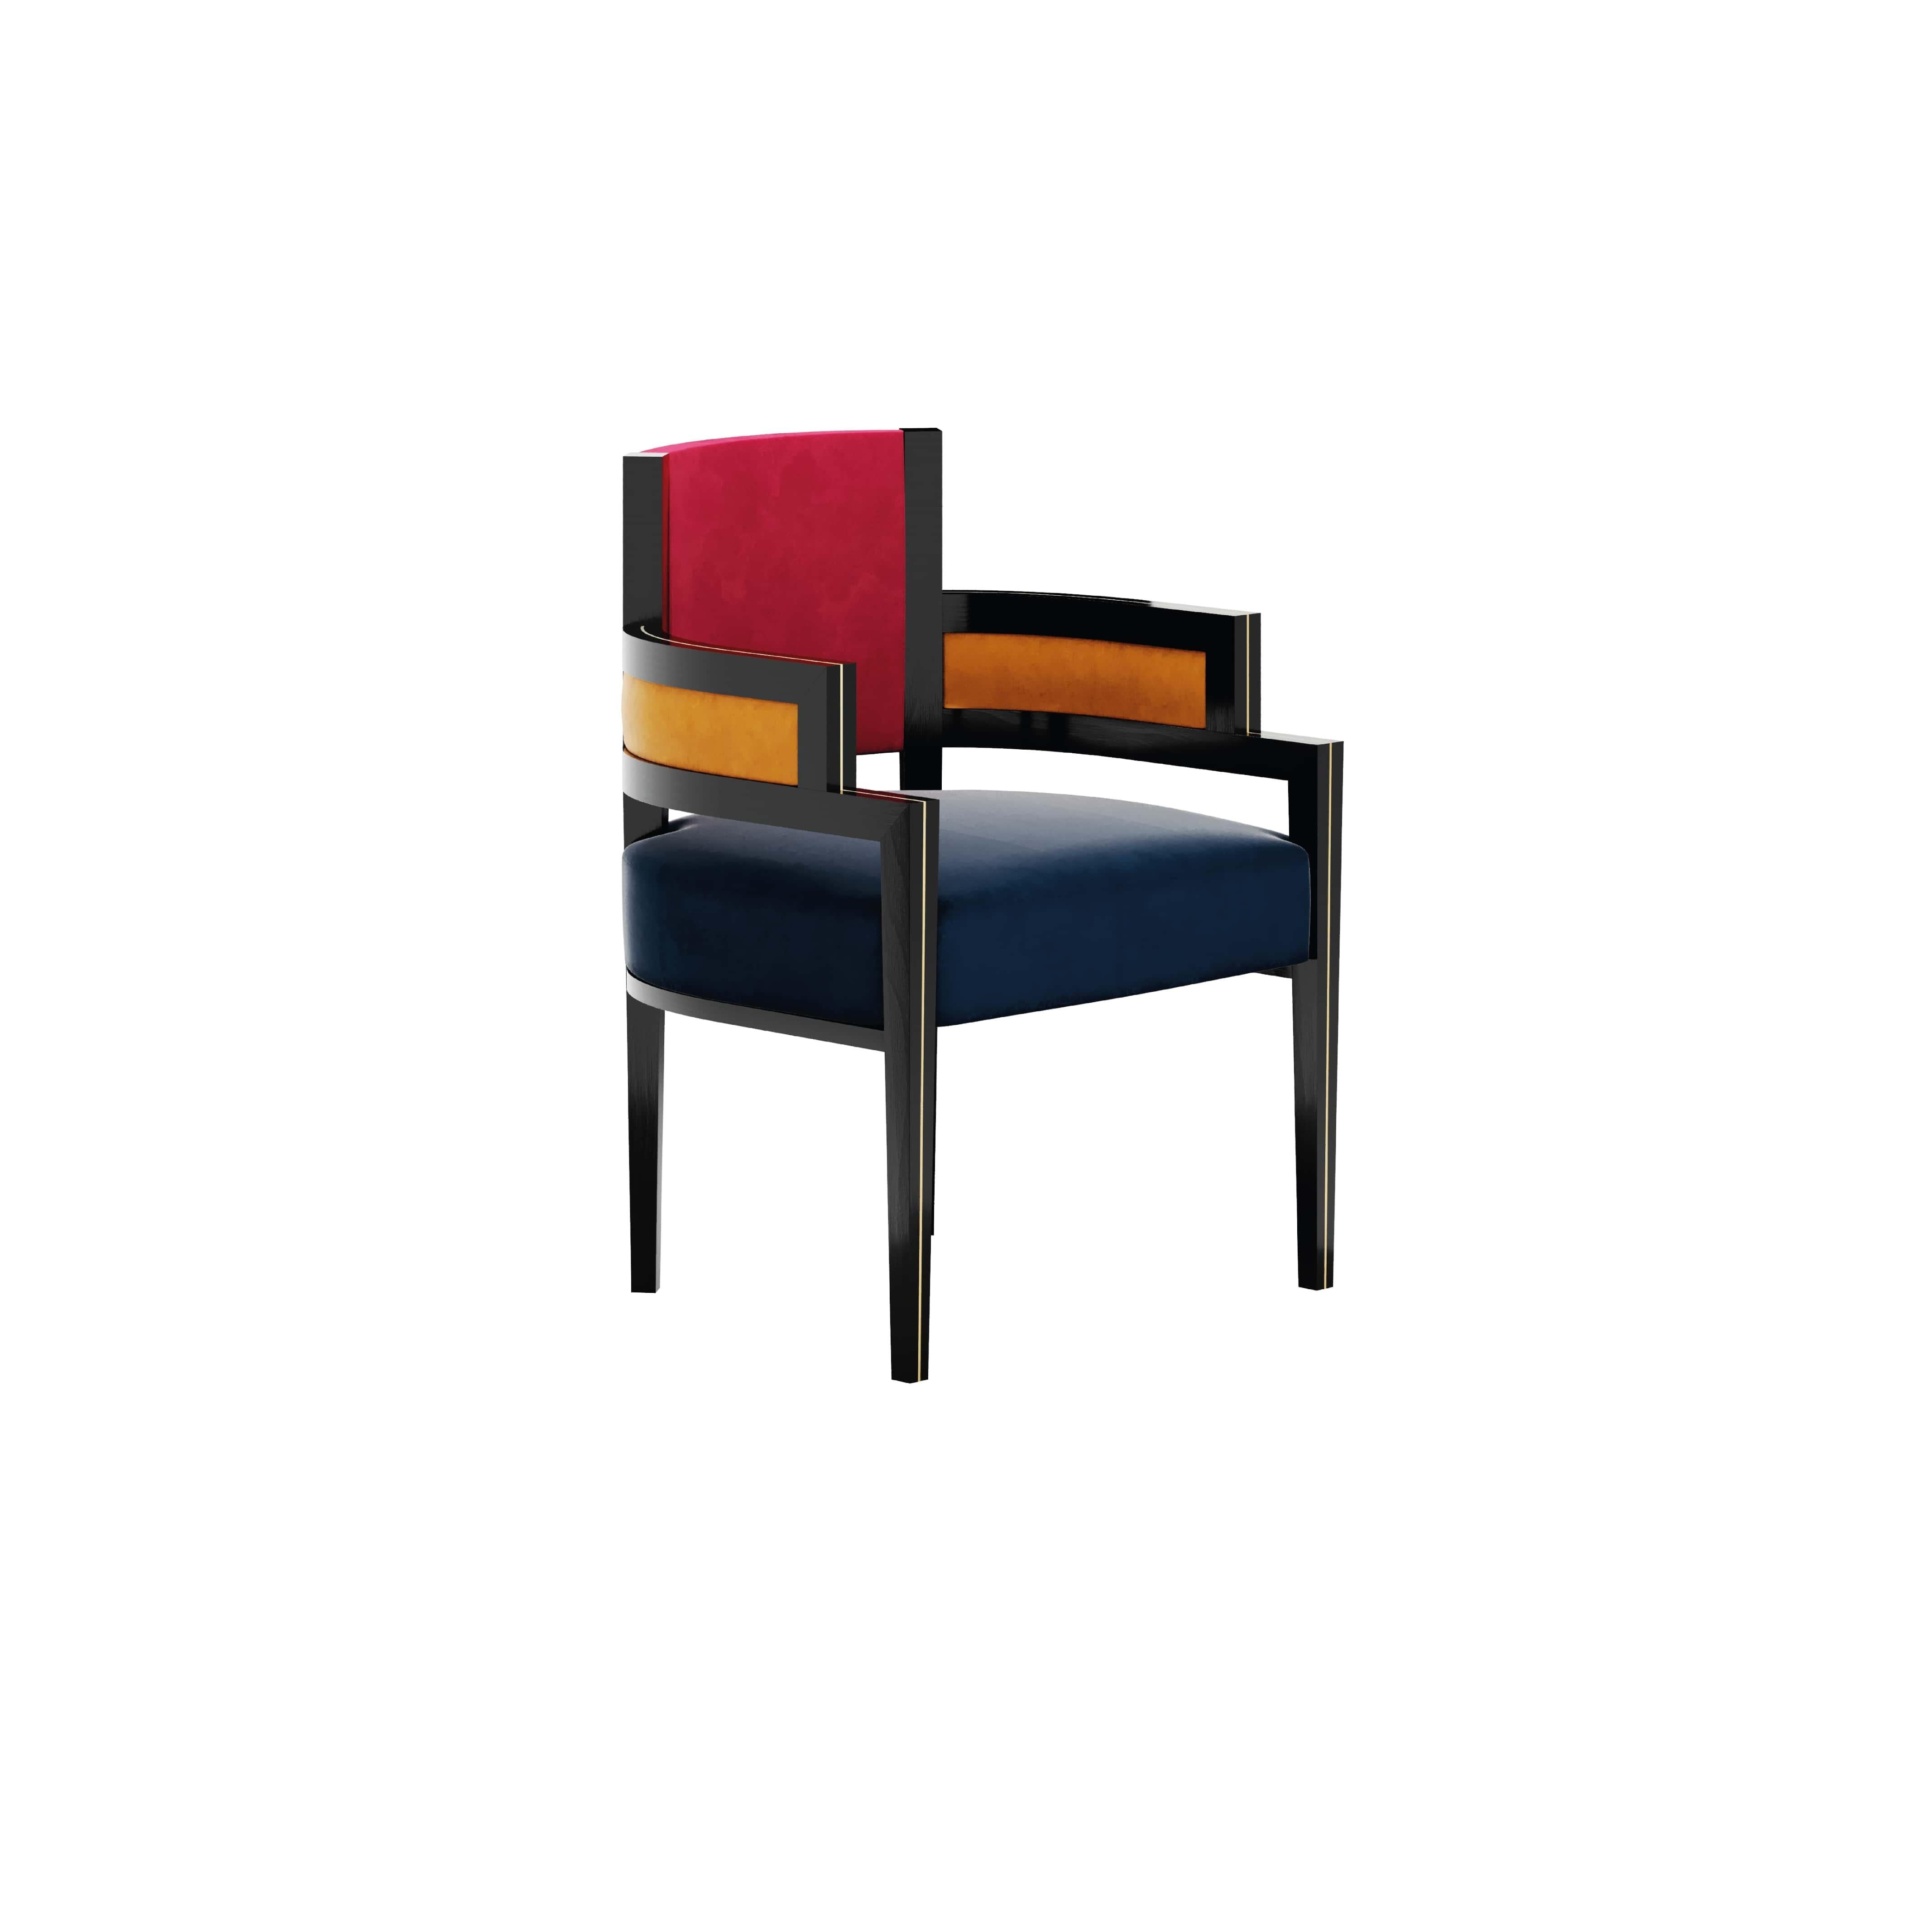 La chaise Pina Mondrian est une chaise haut de gamme recouverte de rouge, de bleu et de jaune.
Cette chaise simple et sophistiquée, Pina Brilliante Mondrian, est un brillant hommage à l'un des pionniers de l'expressionnisme abstrait, Piet Mondrian.